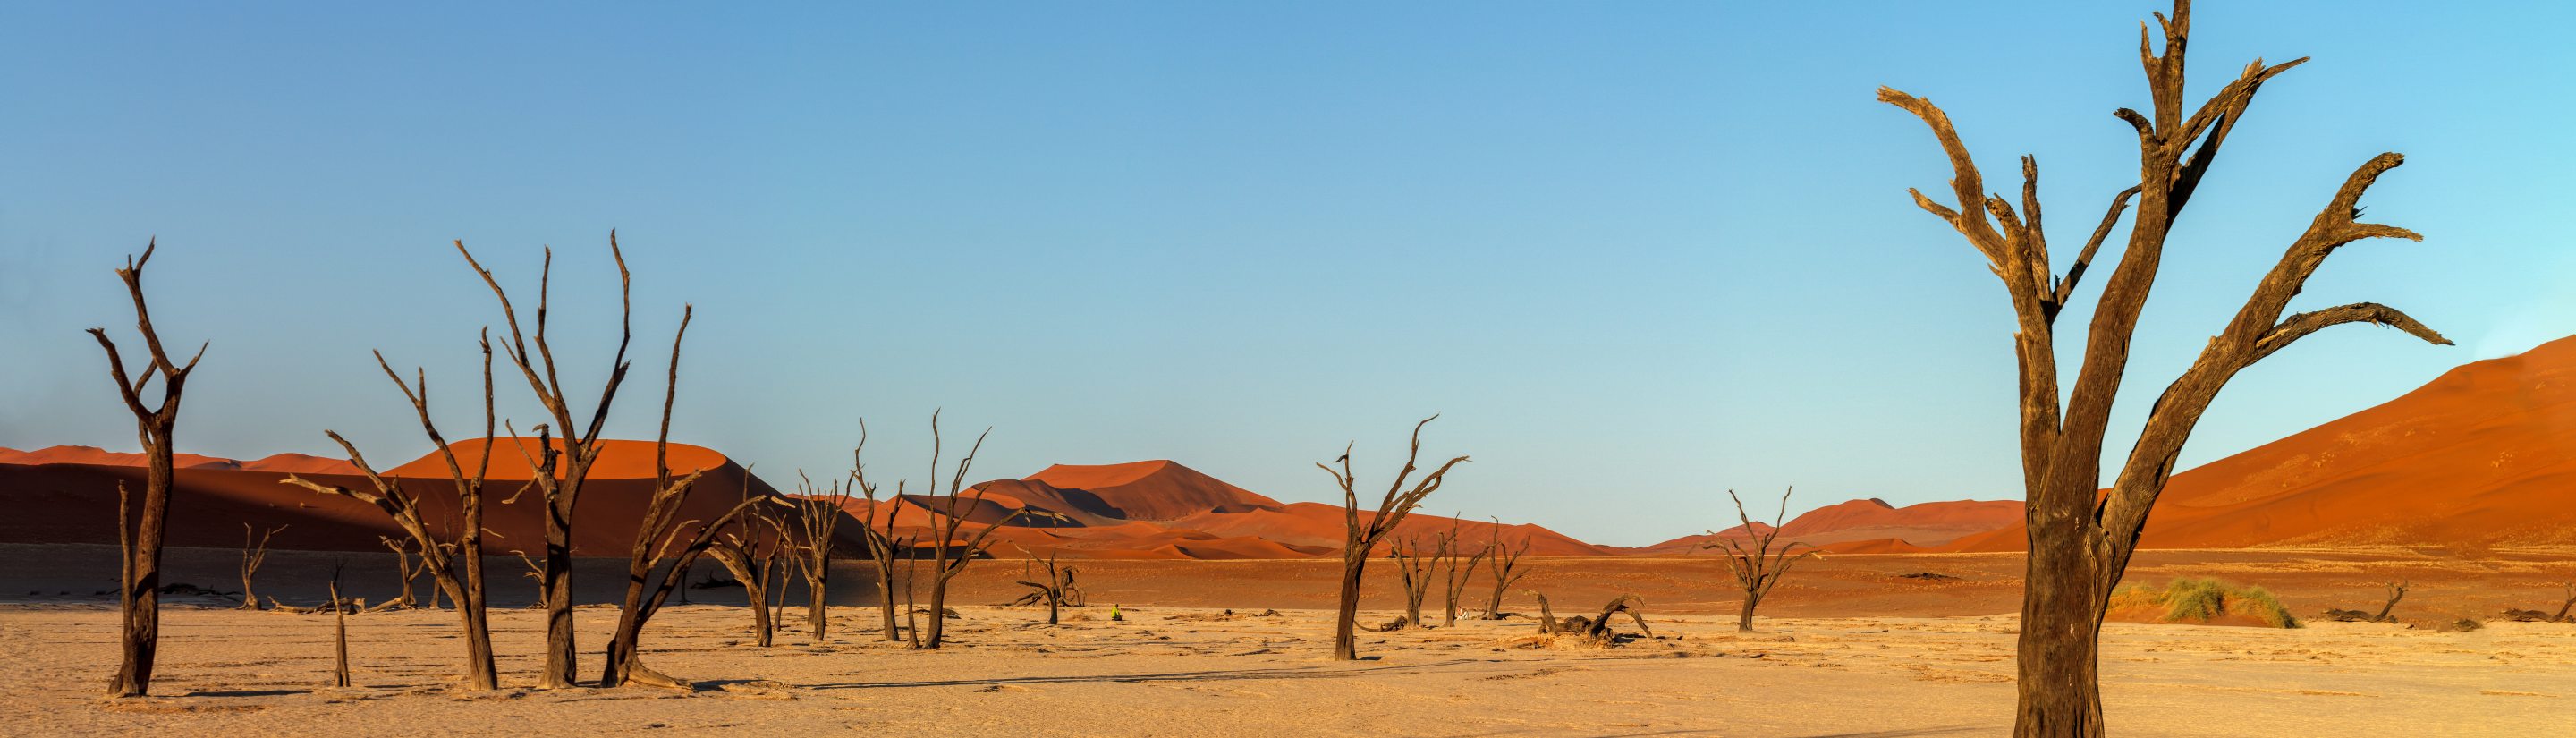 Namibias Sehenswürdigkeiten